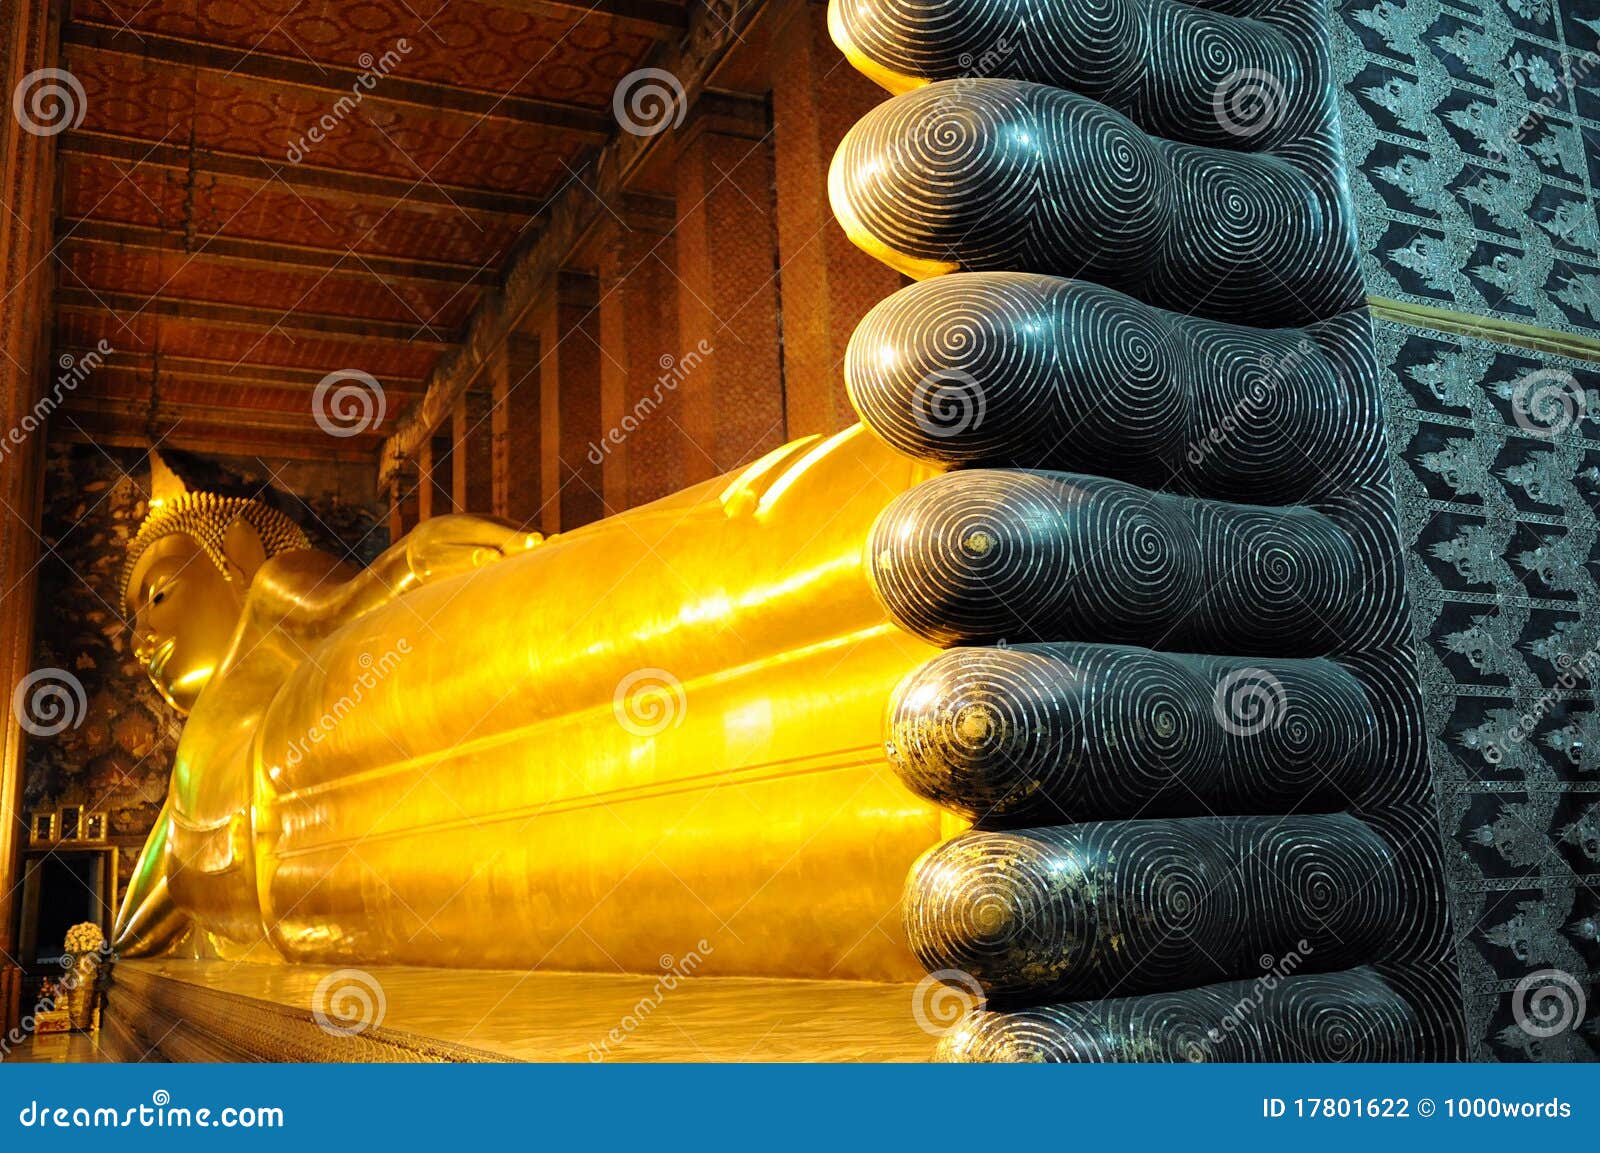 reclining buddha statue at wat pho in bangkok